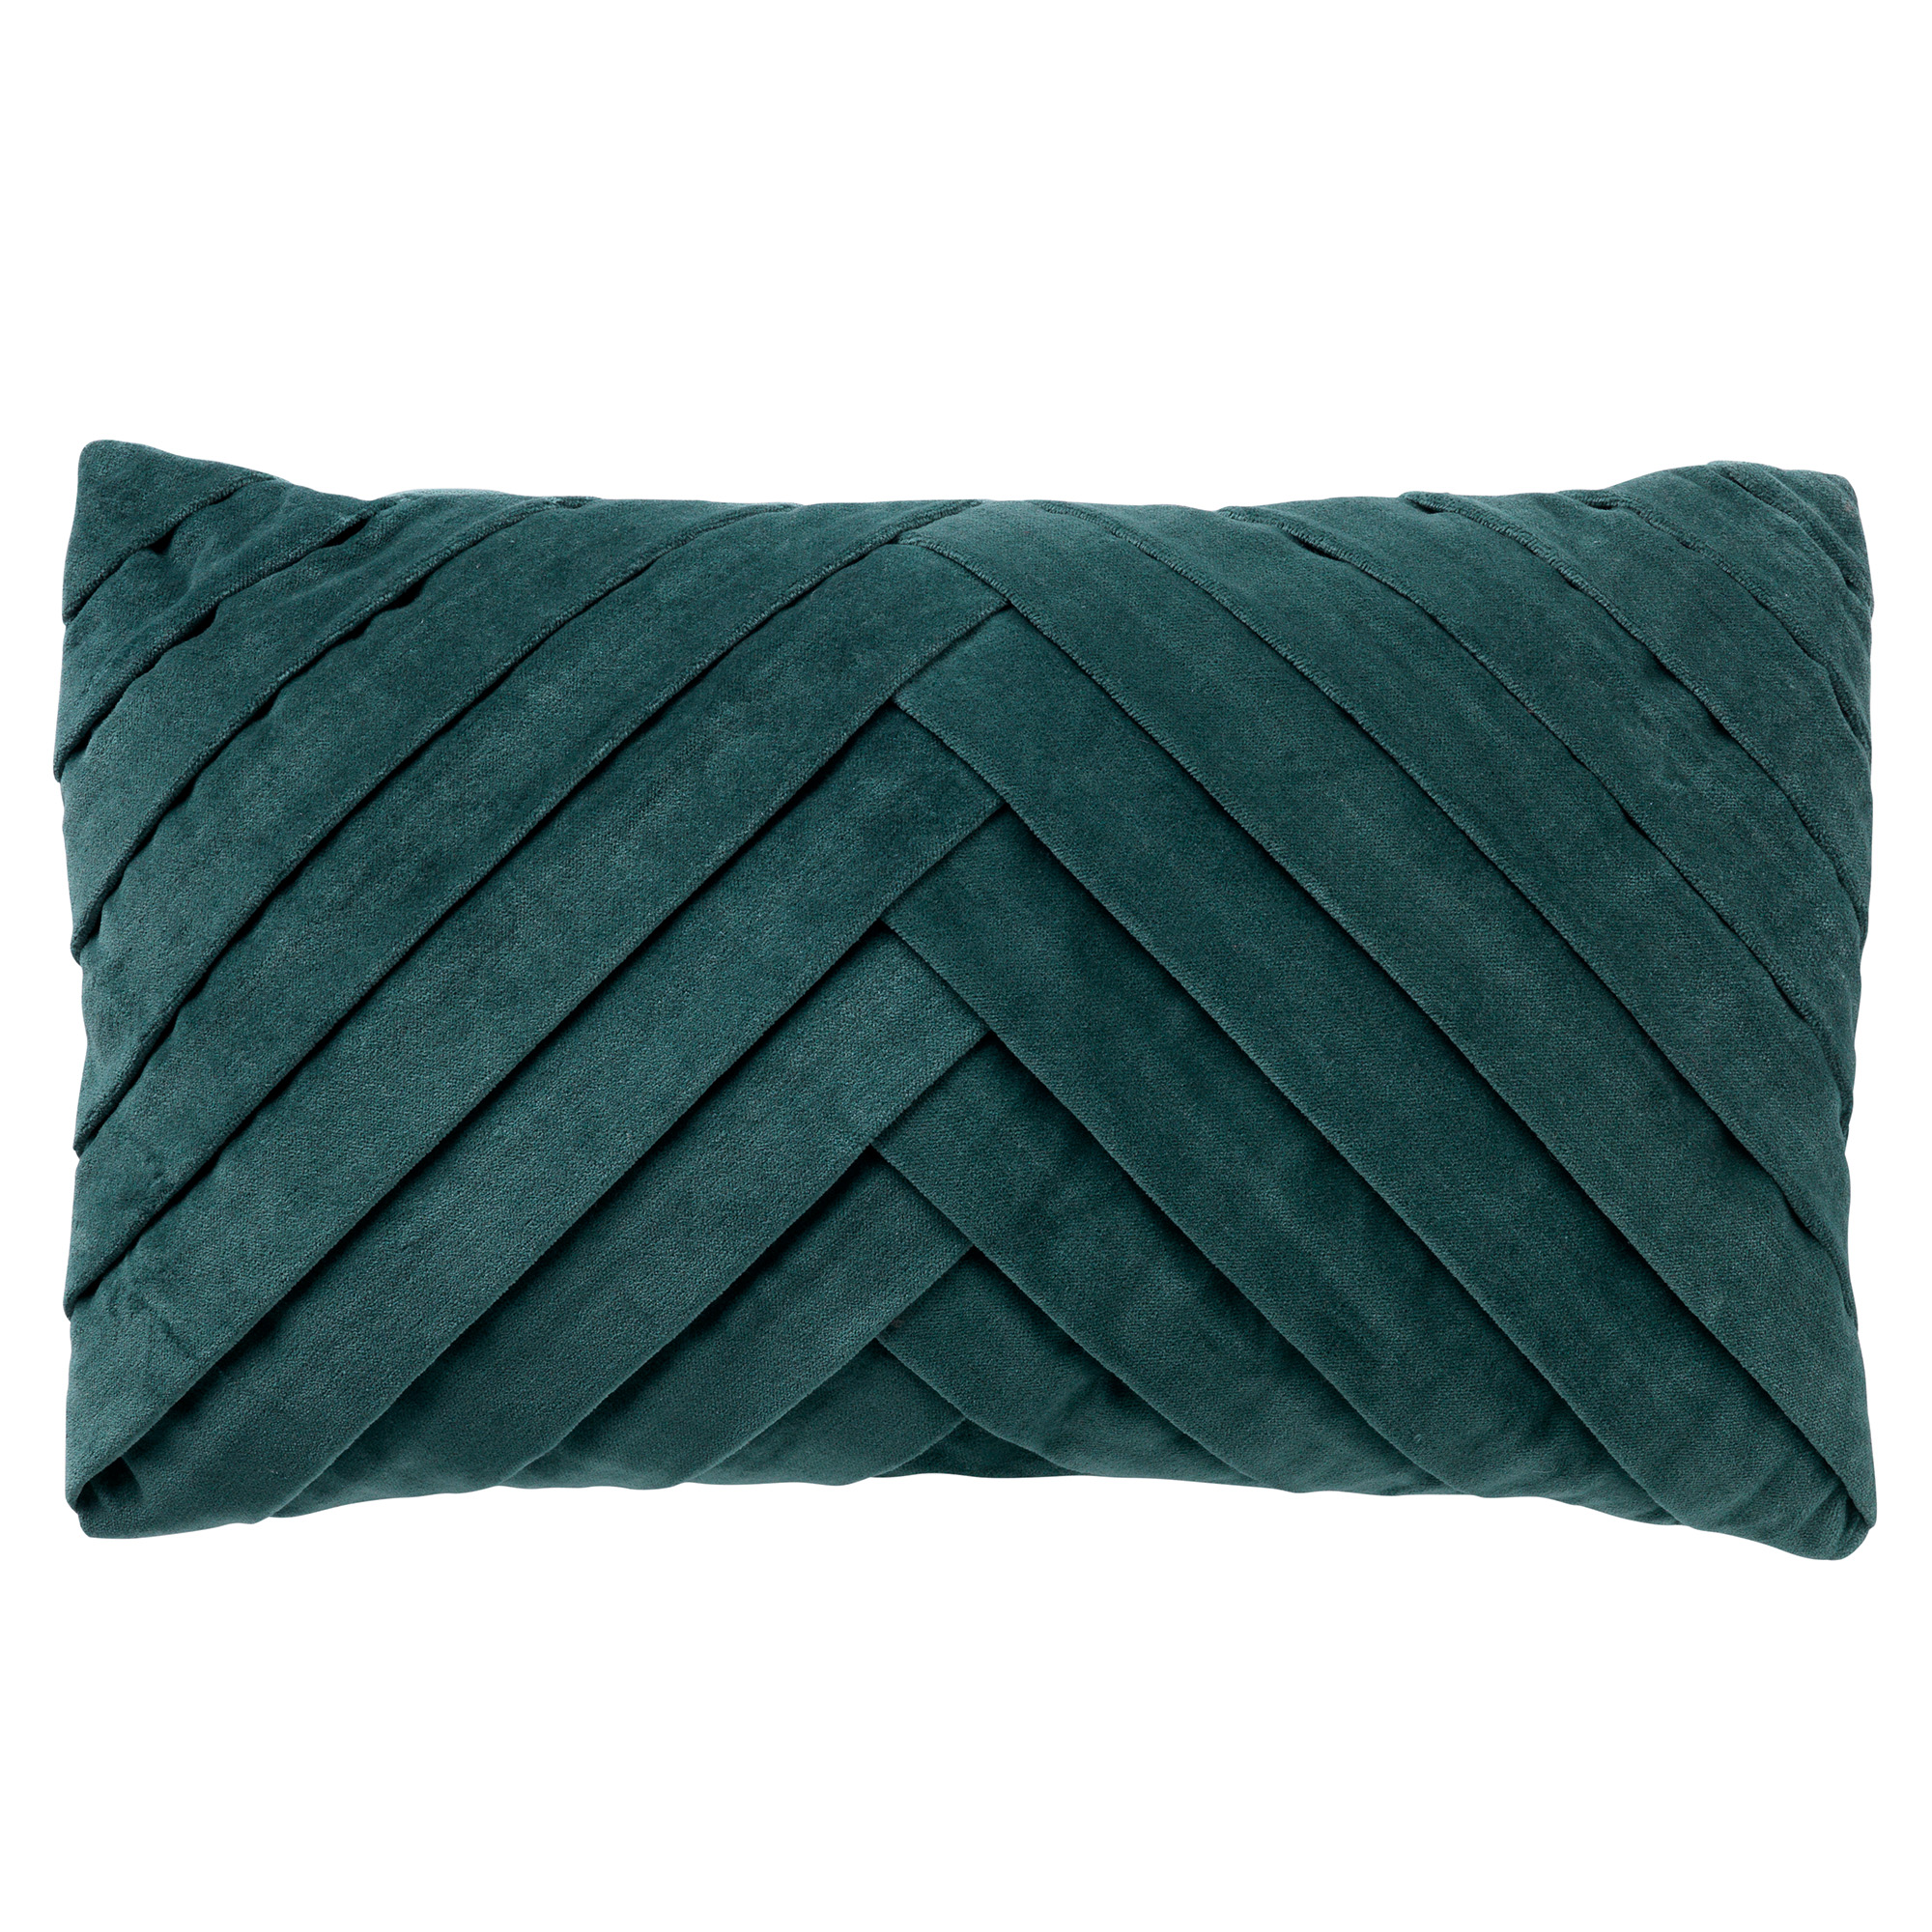 FEMM – Velvet Kussenhoes 30x50 cm - in effen kleur - Sagebrush Green - groen